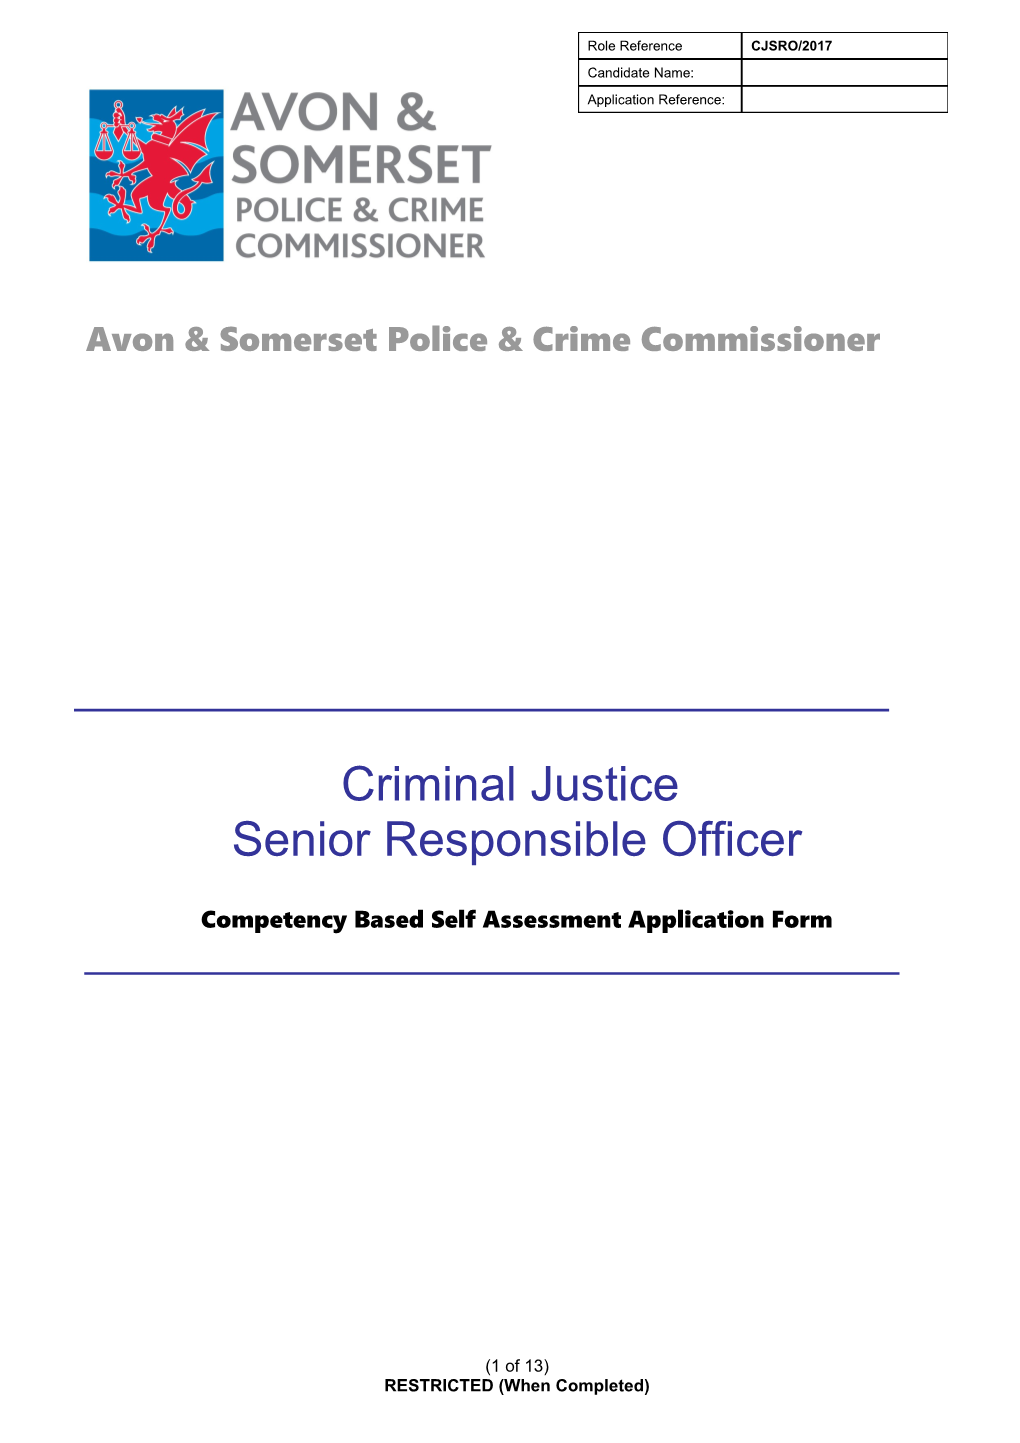 Application Form - Criminal Justice SRO